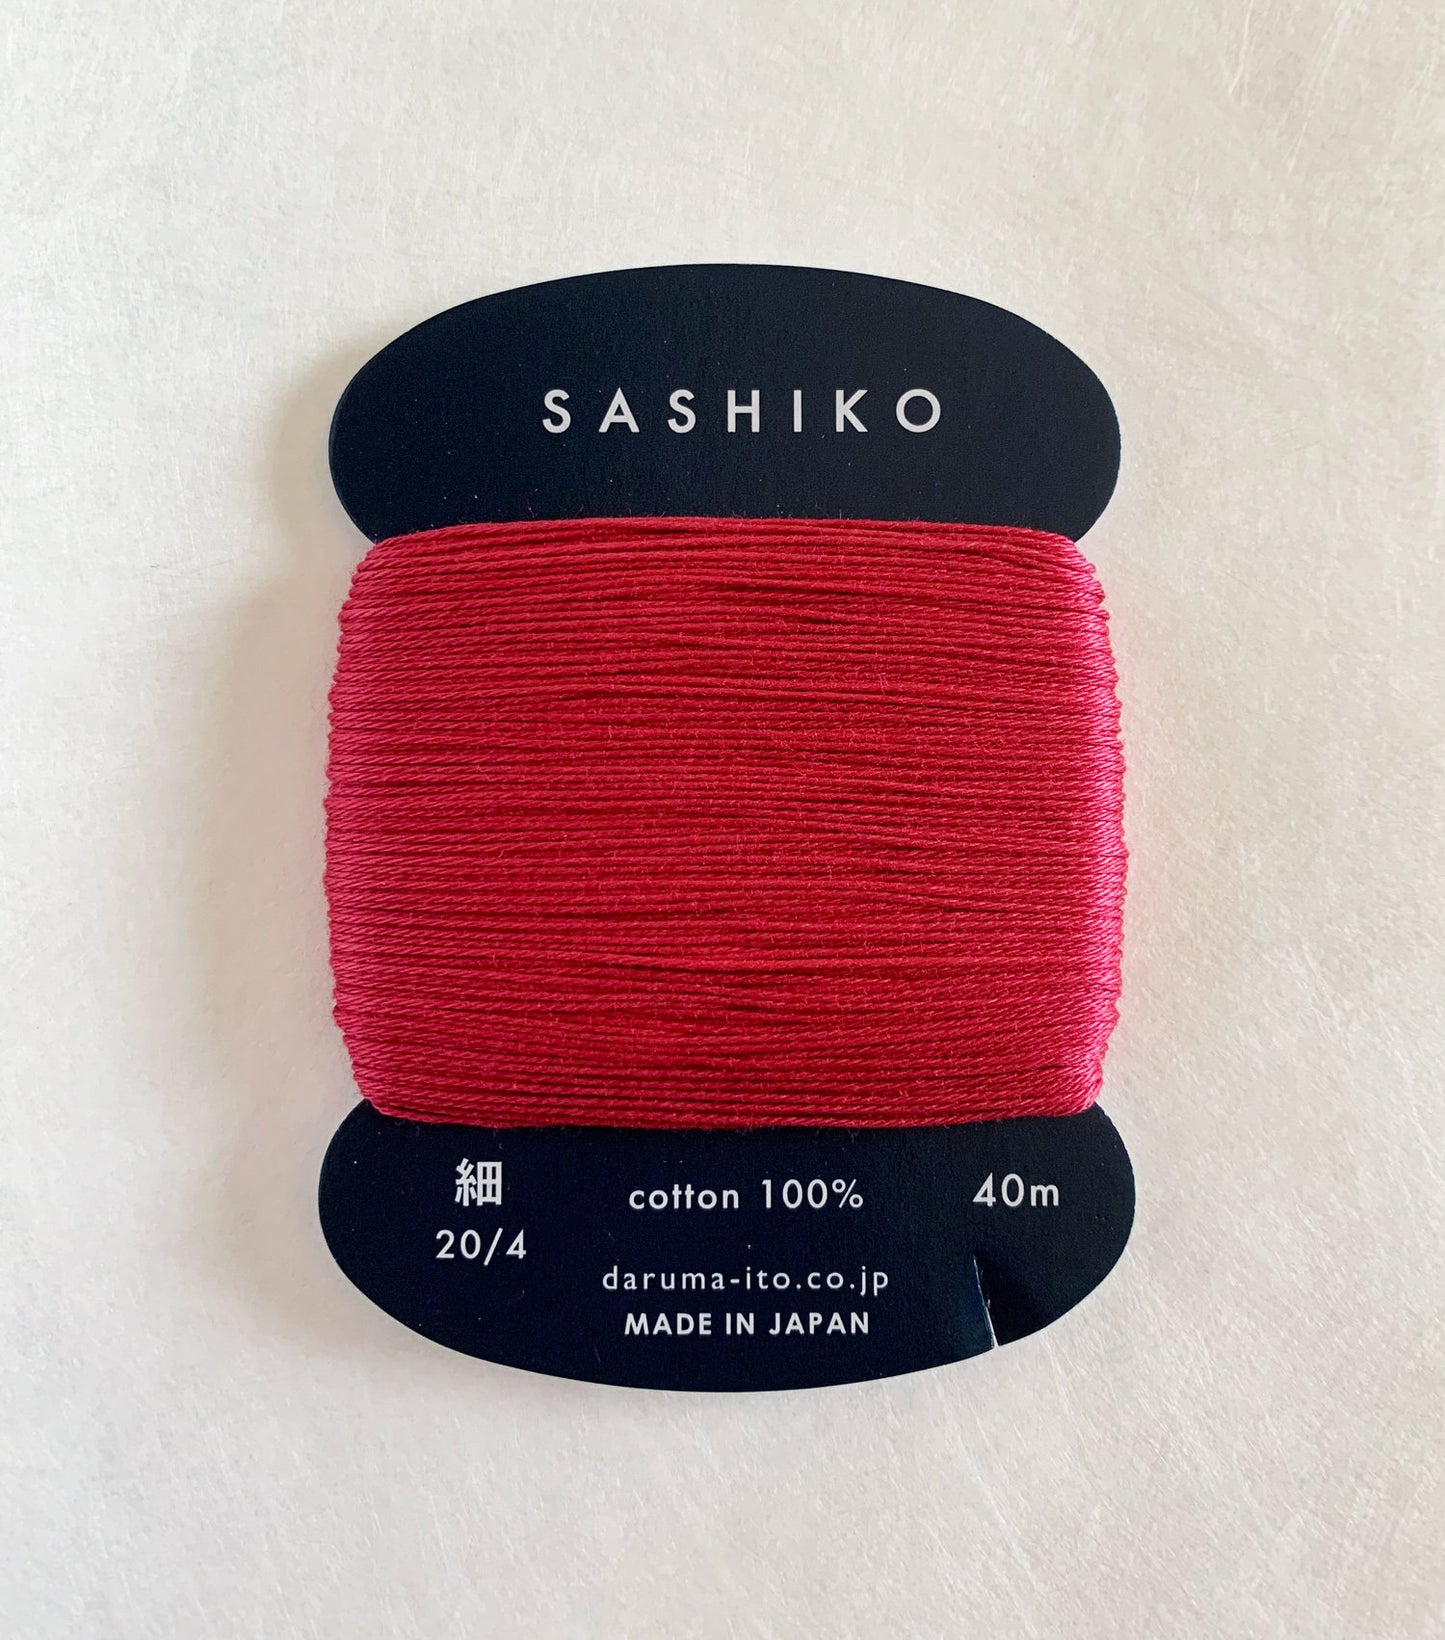 Daruma #221 MADDER RED Japanese Cotton SASHIKO thread 40 meter card 20/4 茜 red